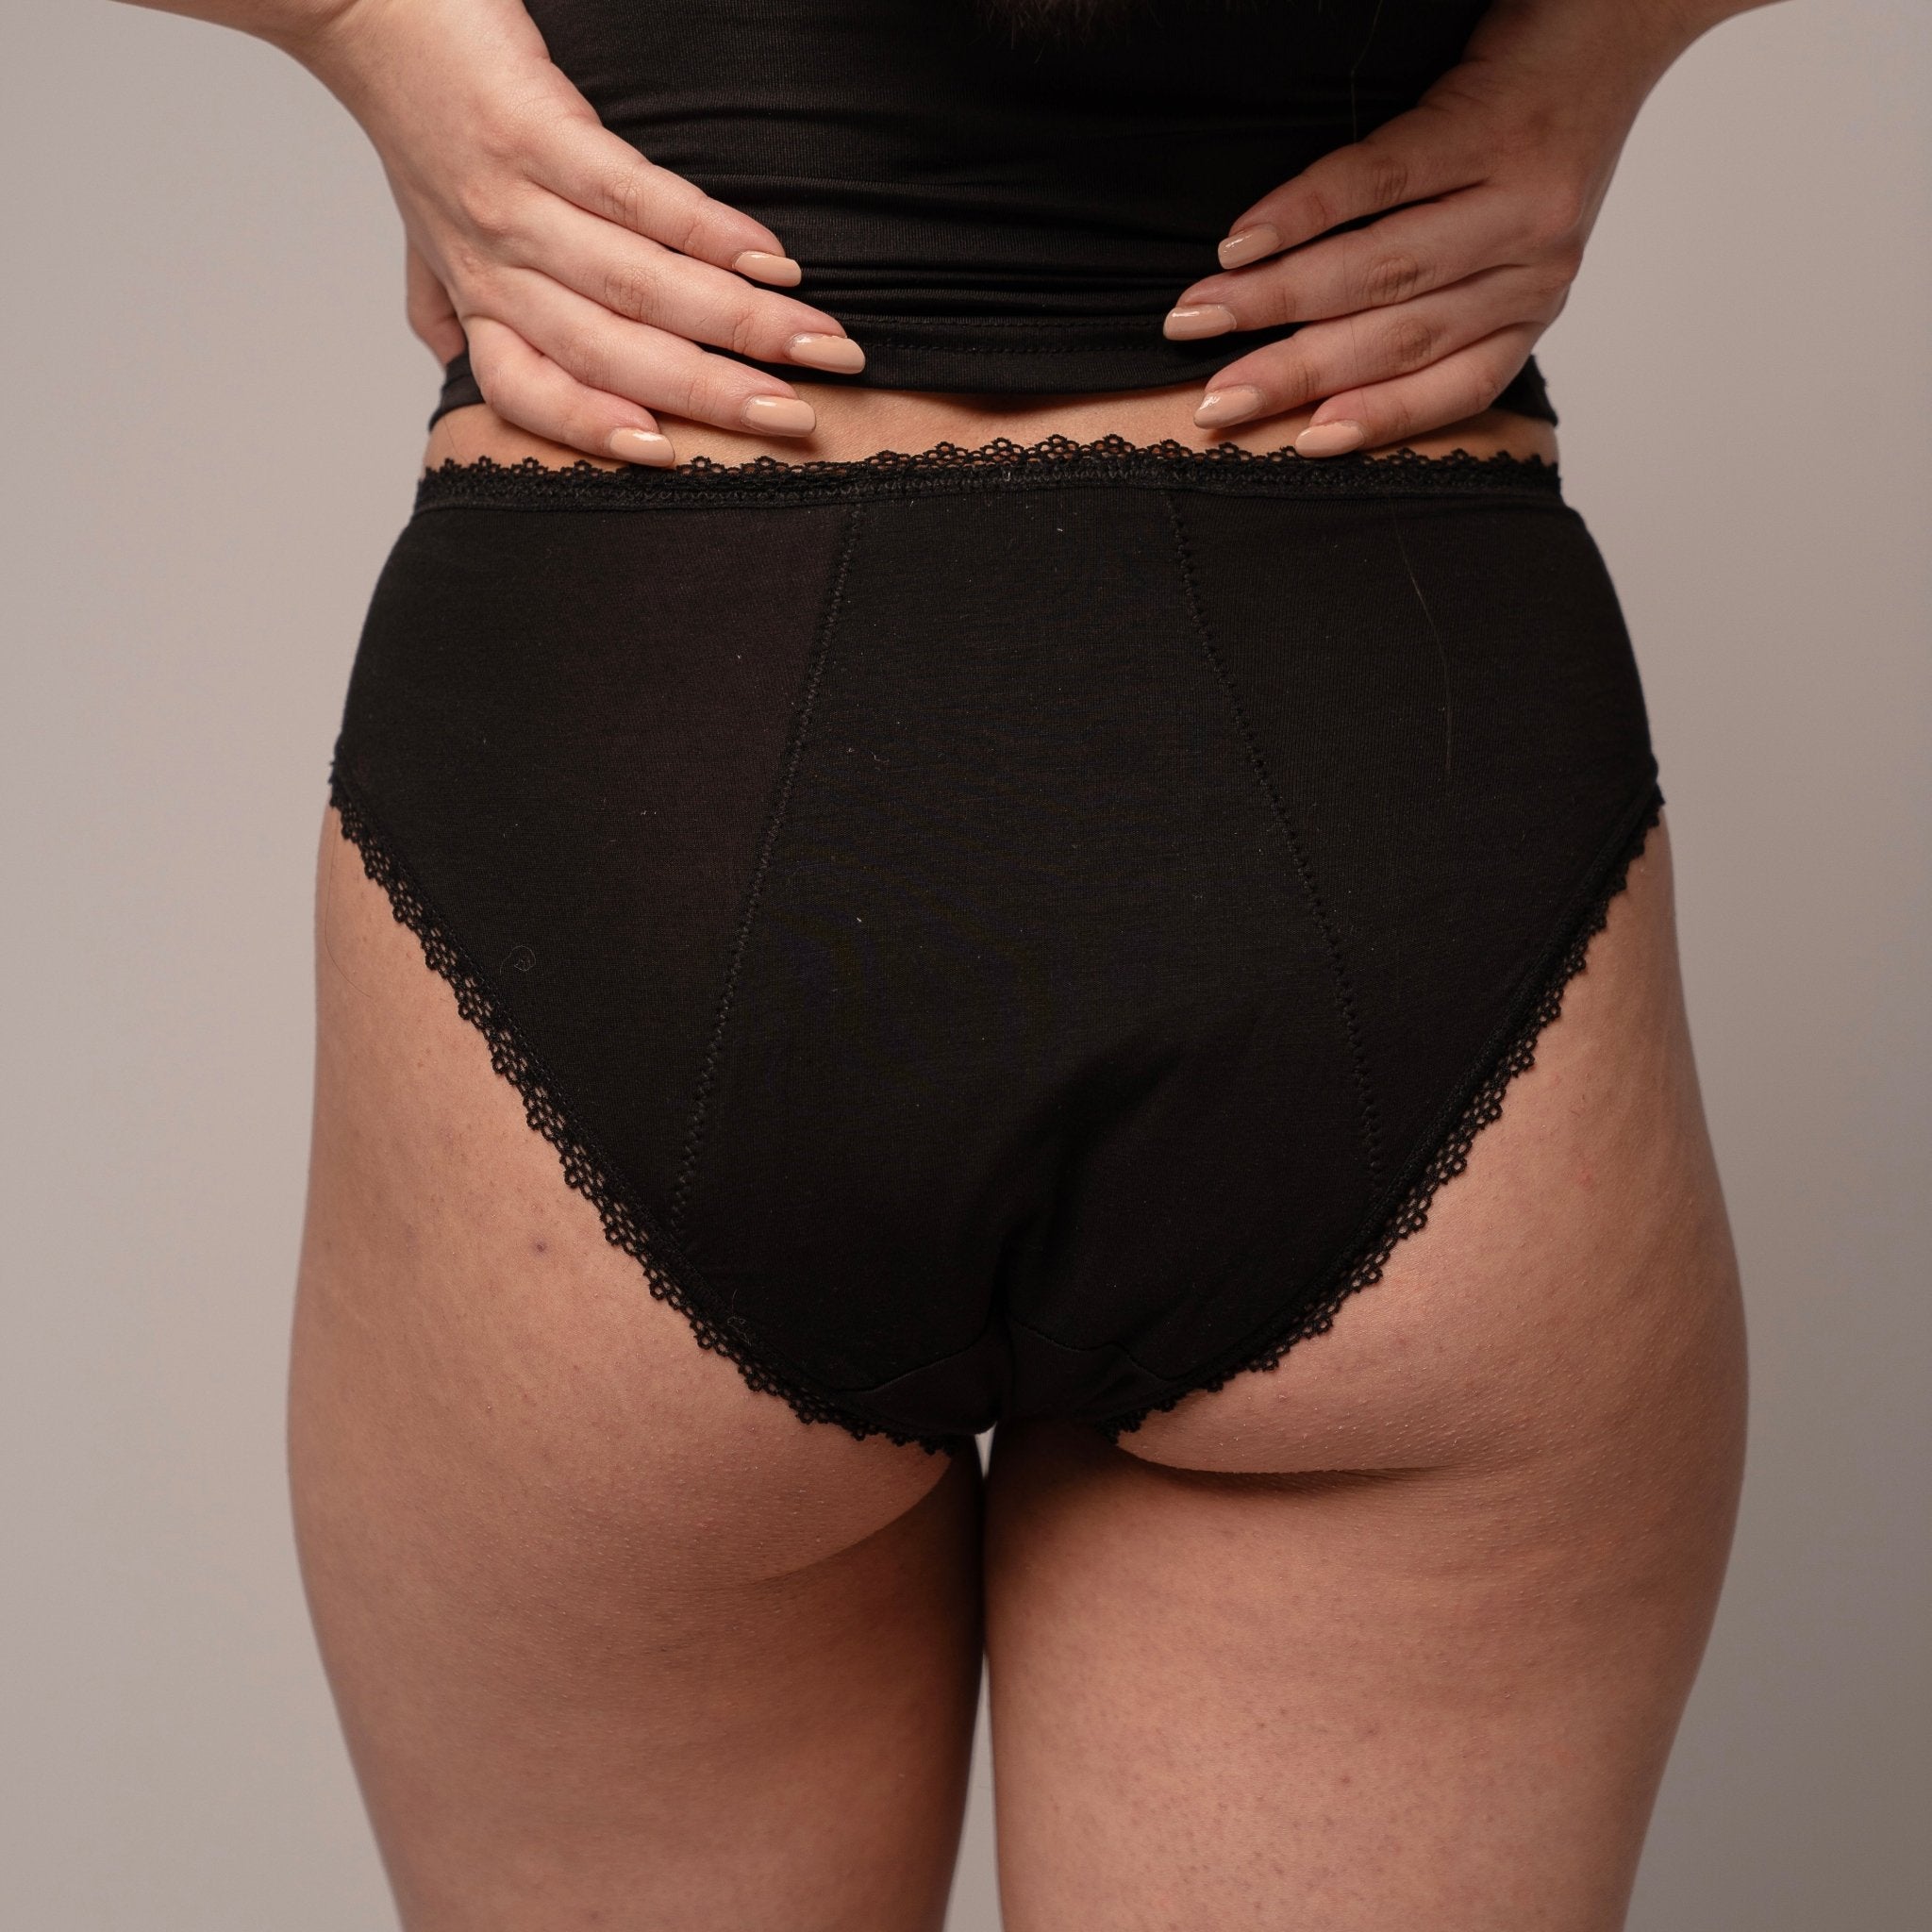 Calendula - highleg mit Spitze - Periodenunterwäsche, Menstruationsunterwäsche von my•mense